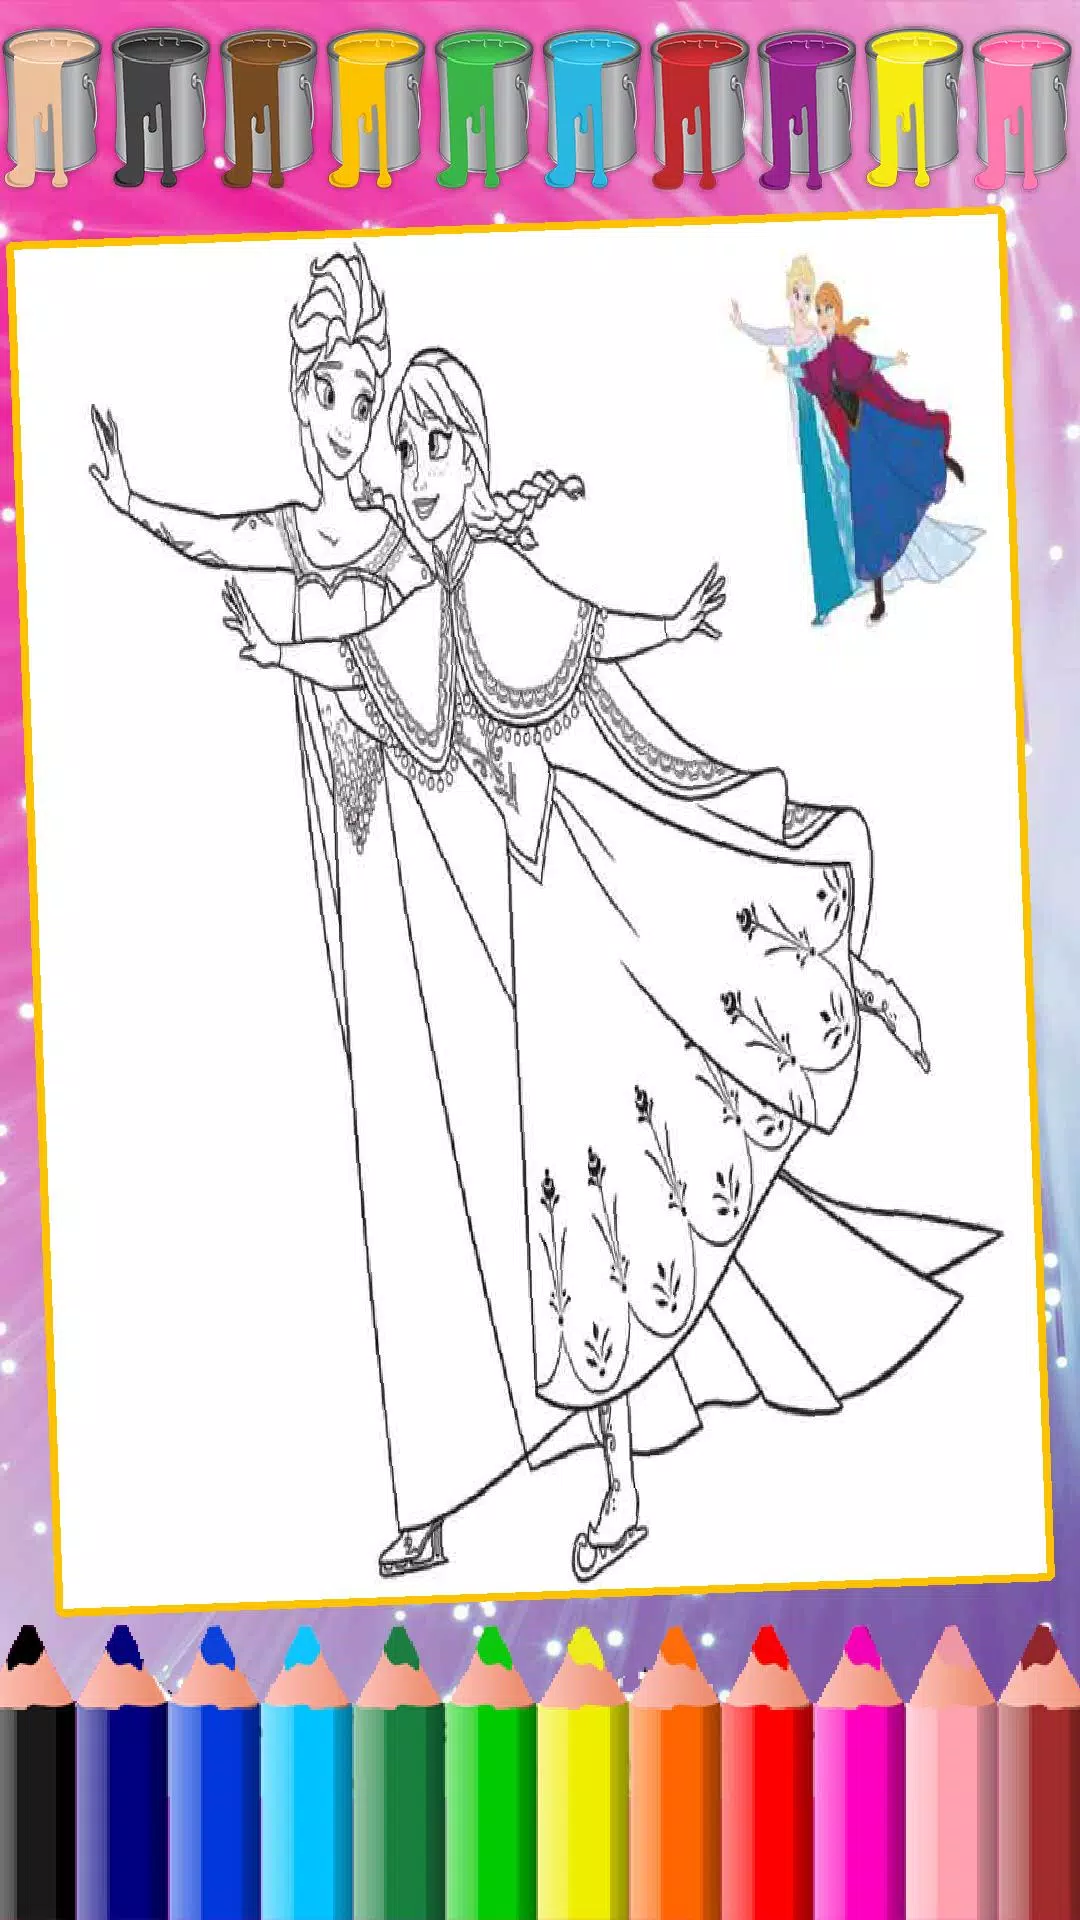 Prince & Princess Coloring Book - Princesas bonitas do amor? Gosta de  desenhar e pintar princesa livre colorir jogo de  páginas!::Appstore for Android